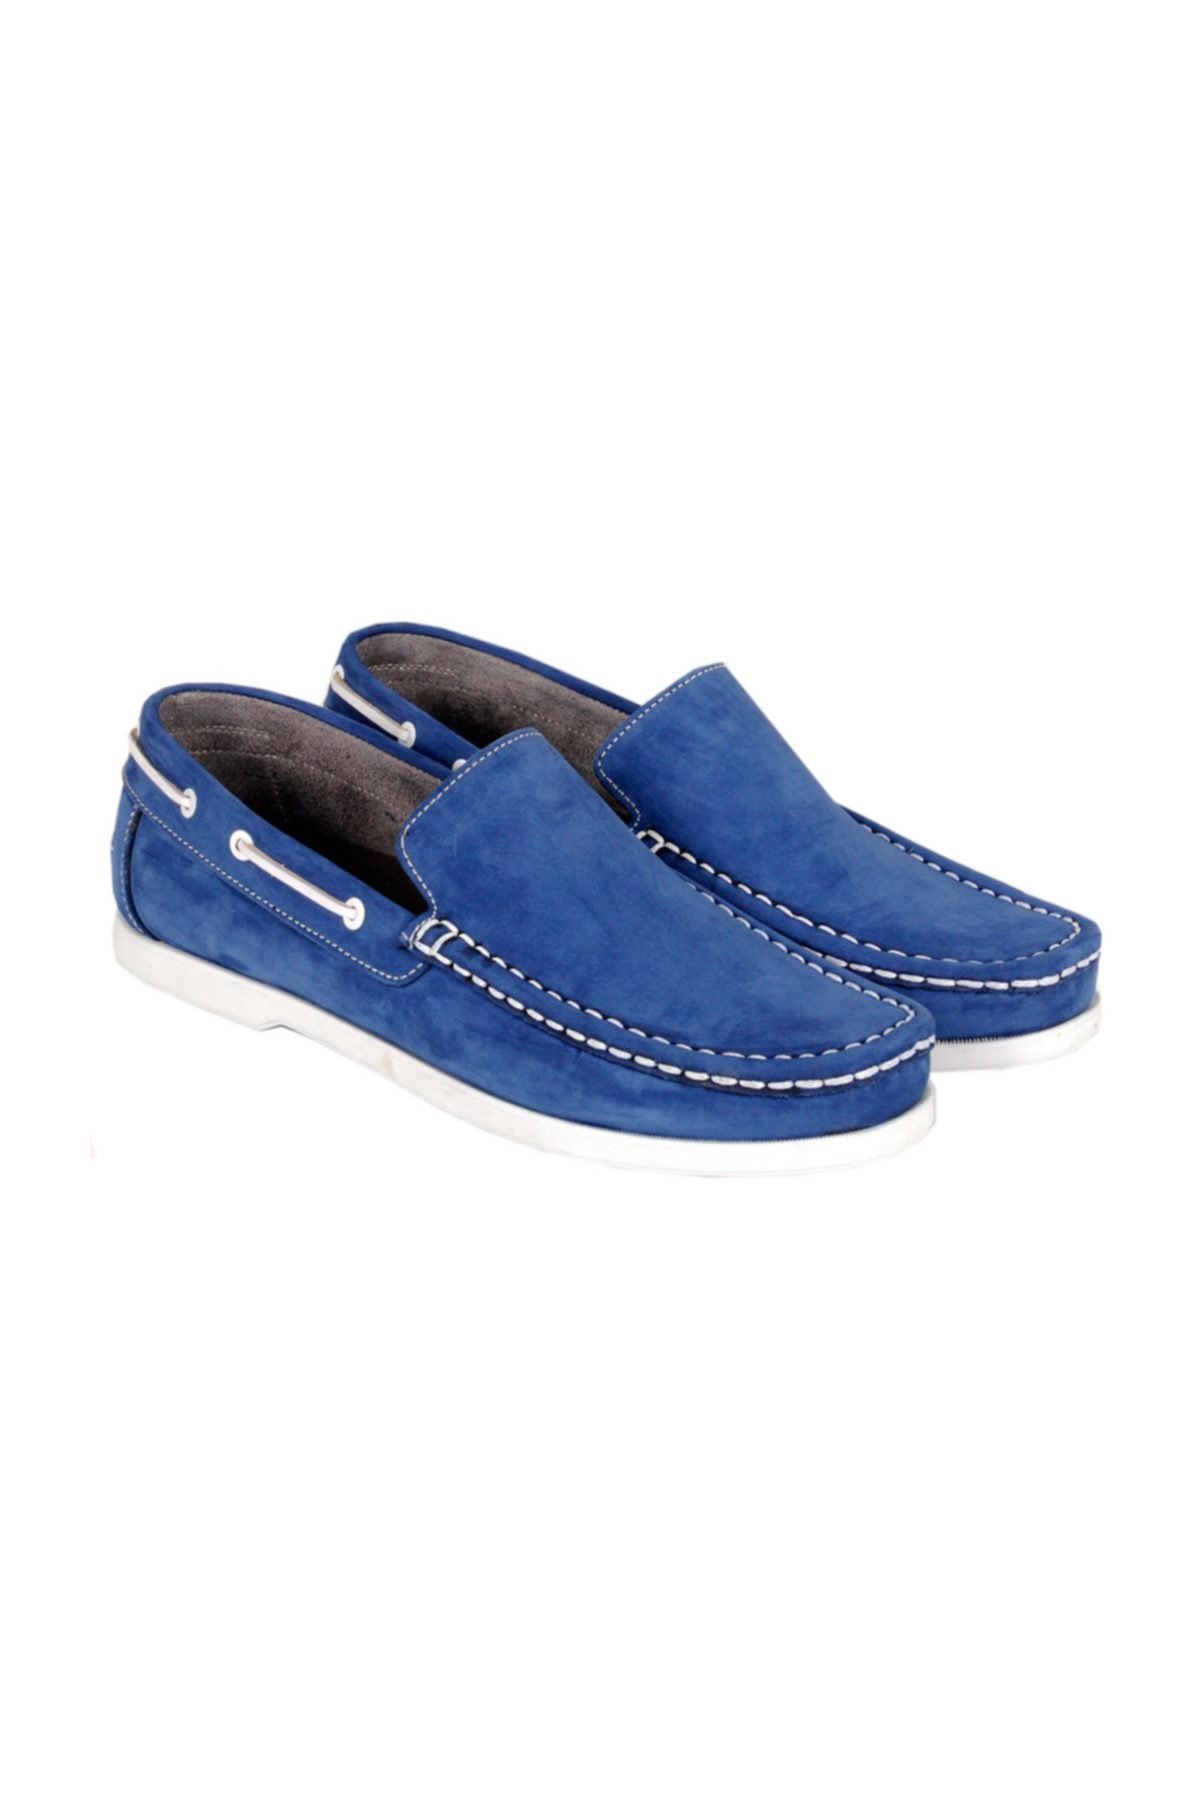 Modexl Büyük Numara Ayakkabı Makosen Nubuk 17800 Mavi